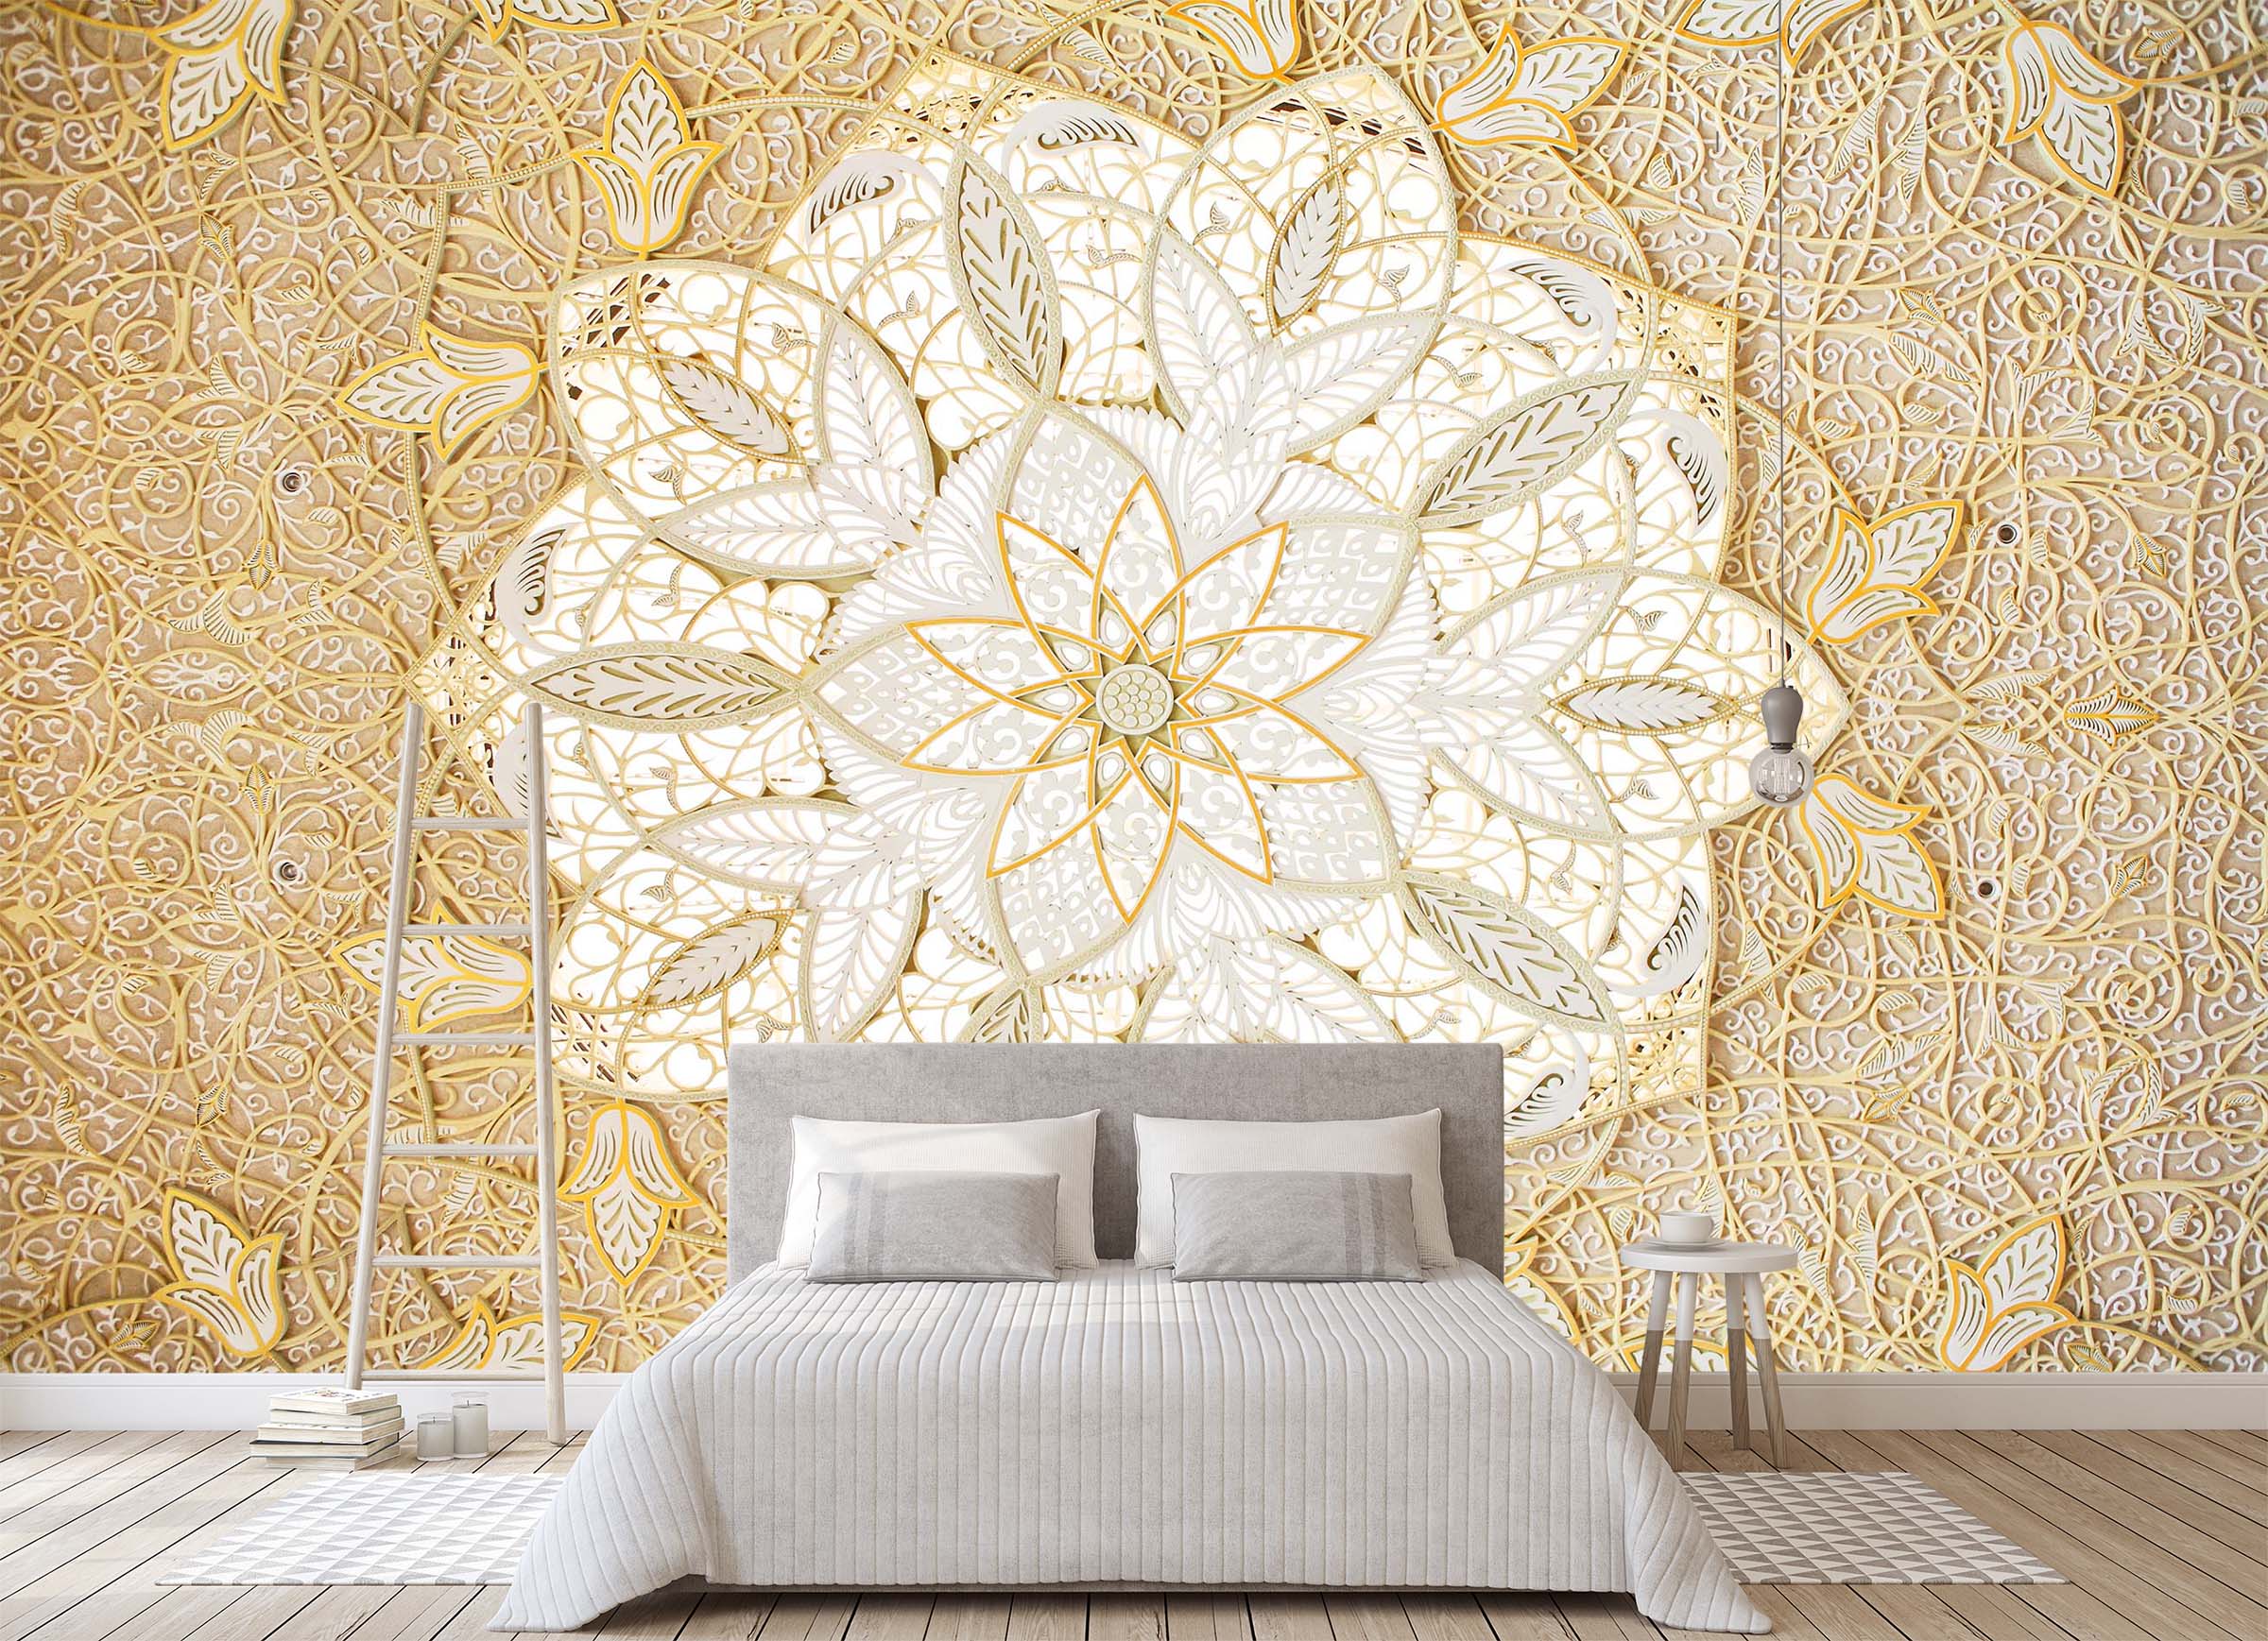 3D Ceiling Pattern 1648 Wall Murals